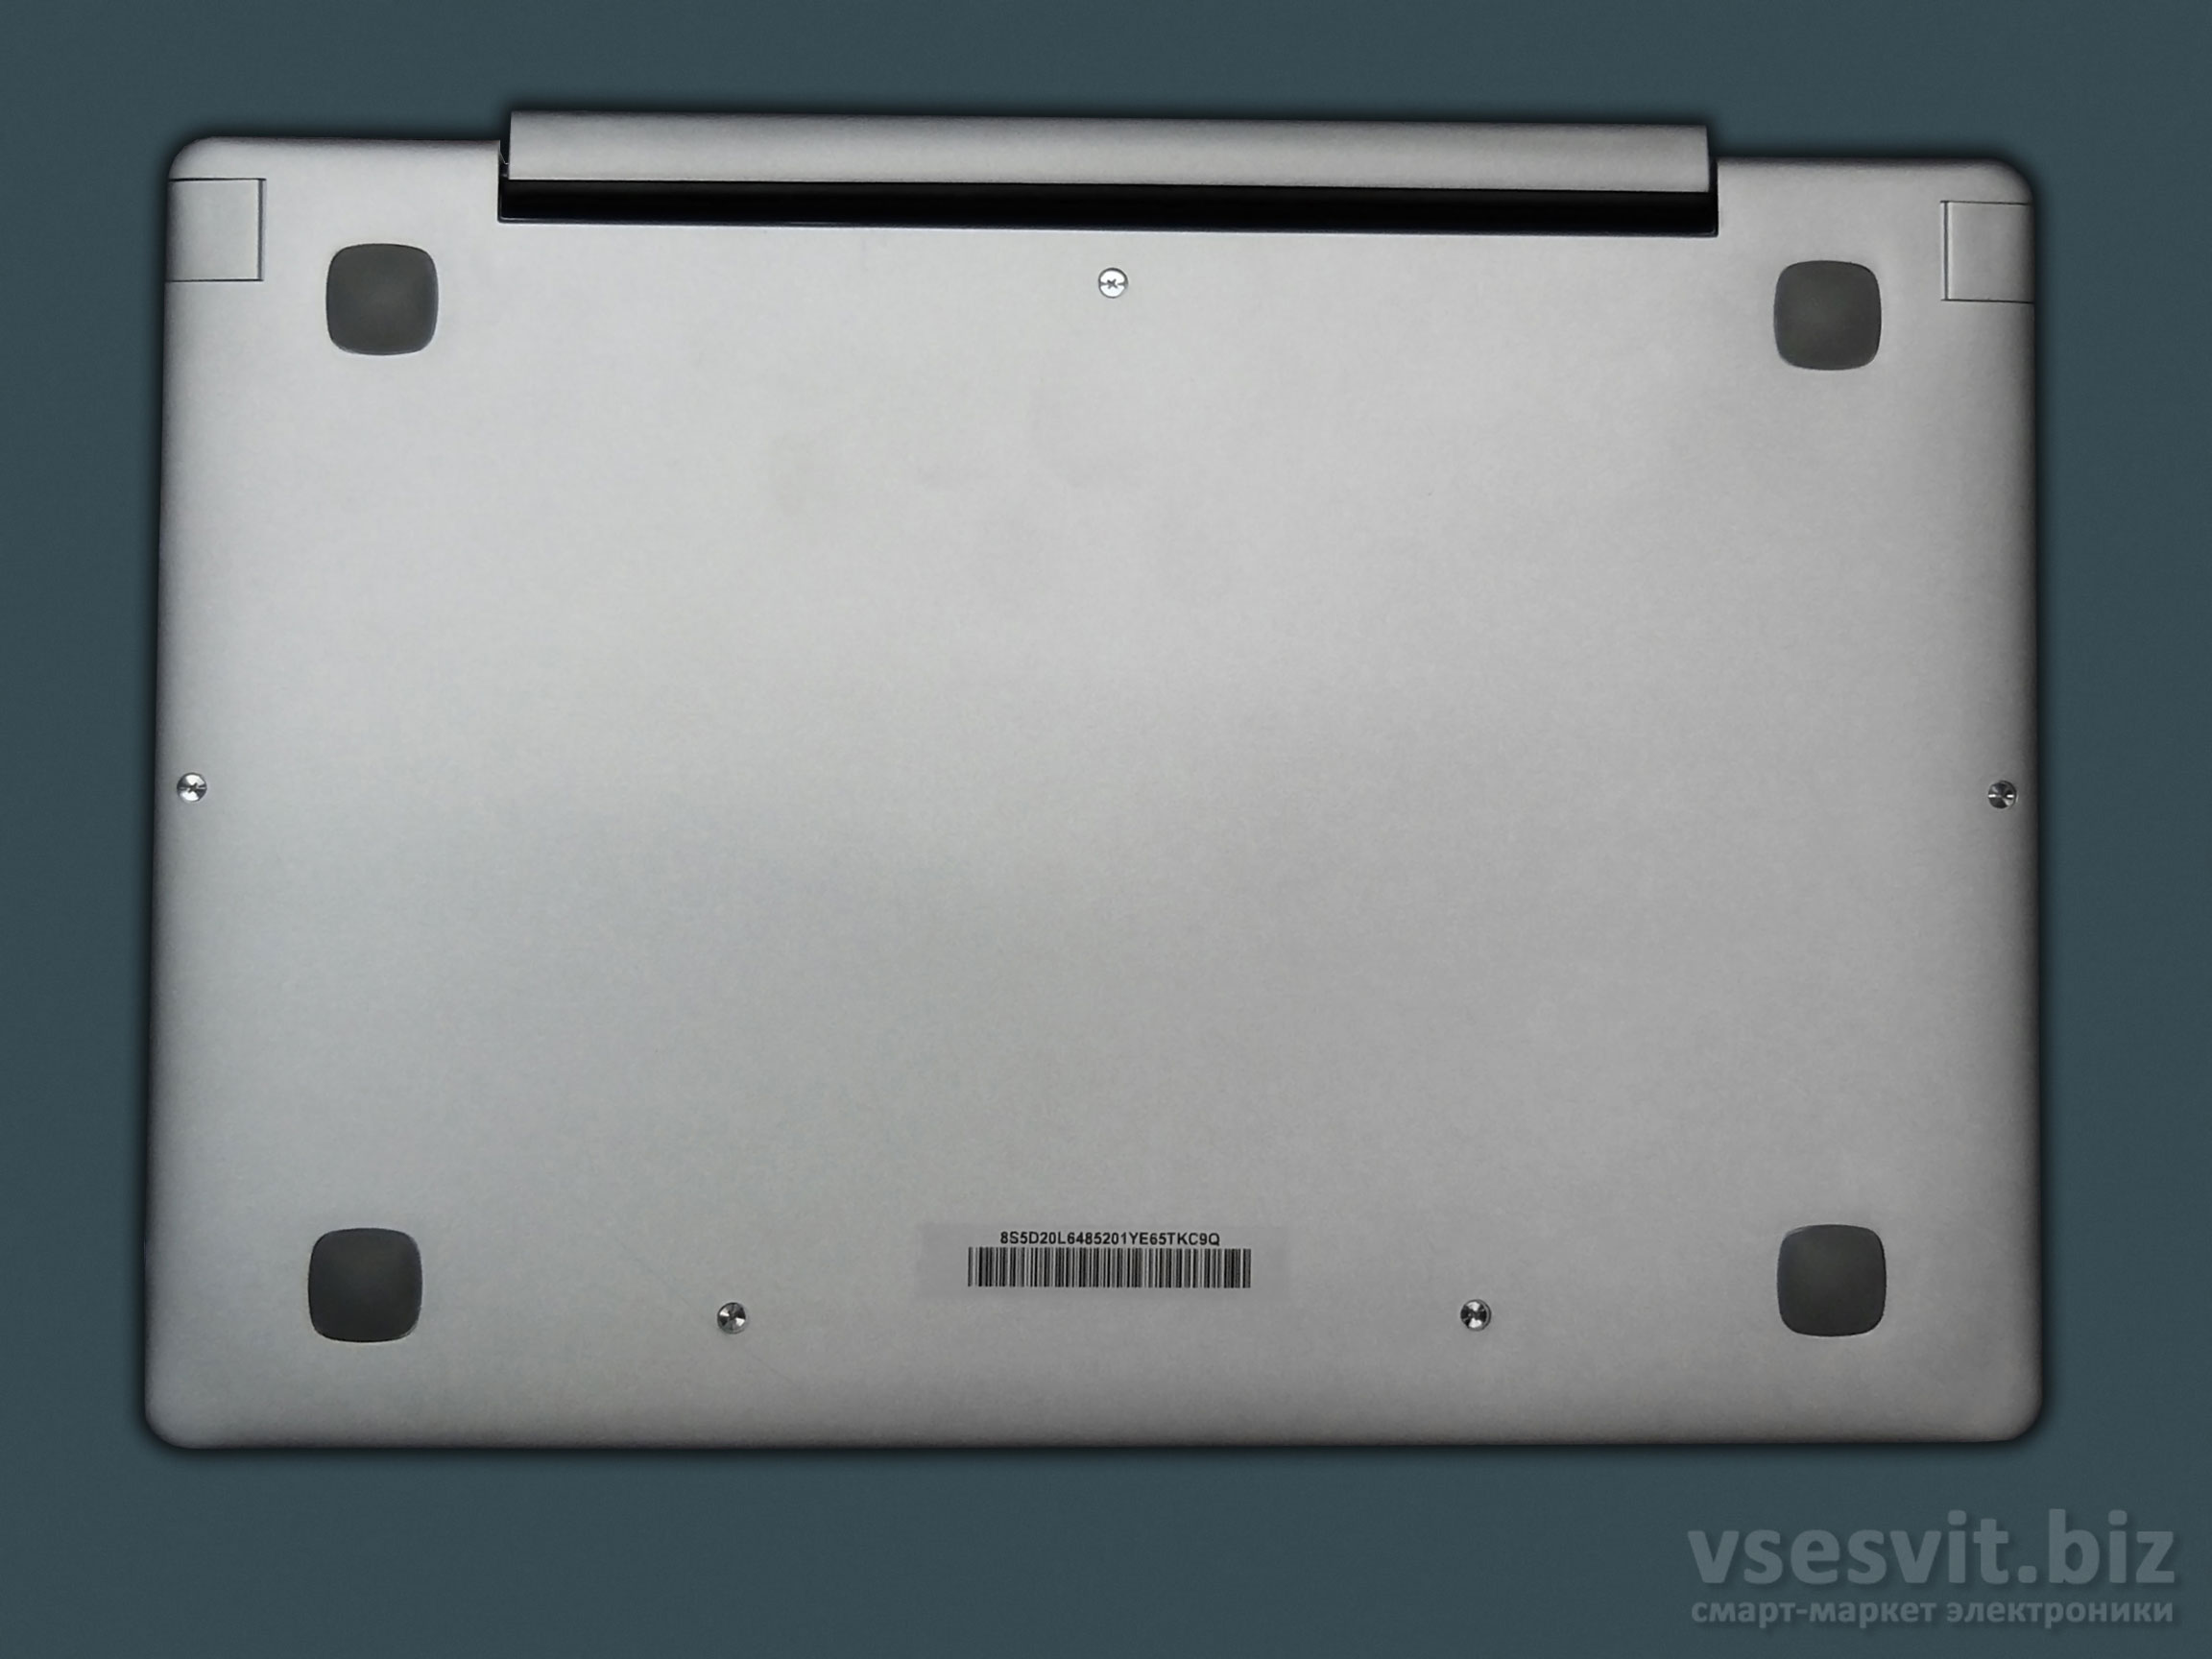 Lenovo IdeaPad Miix 310